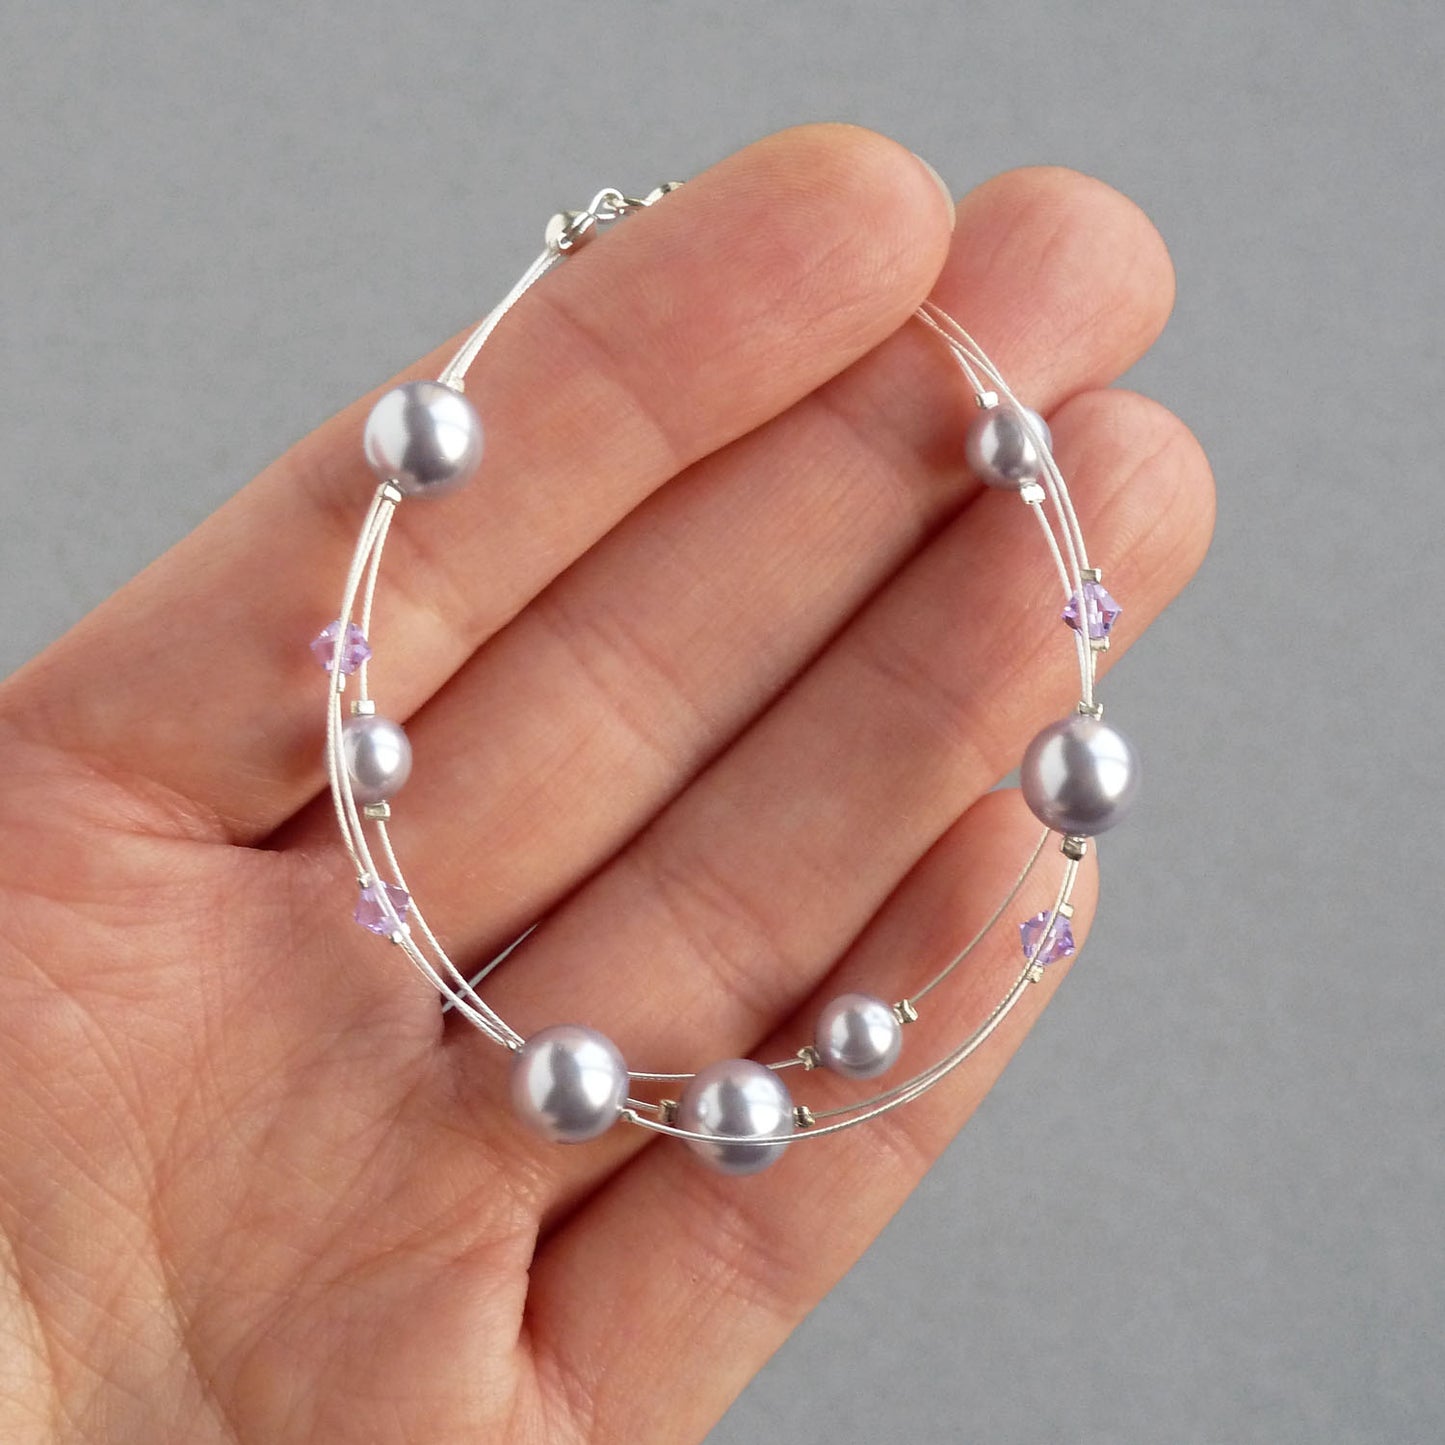 Lavender pearl bridesmaids bracelets